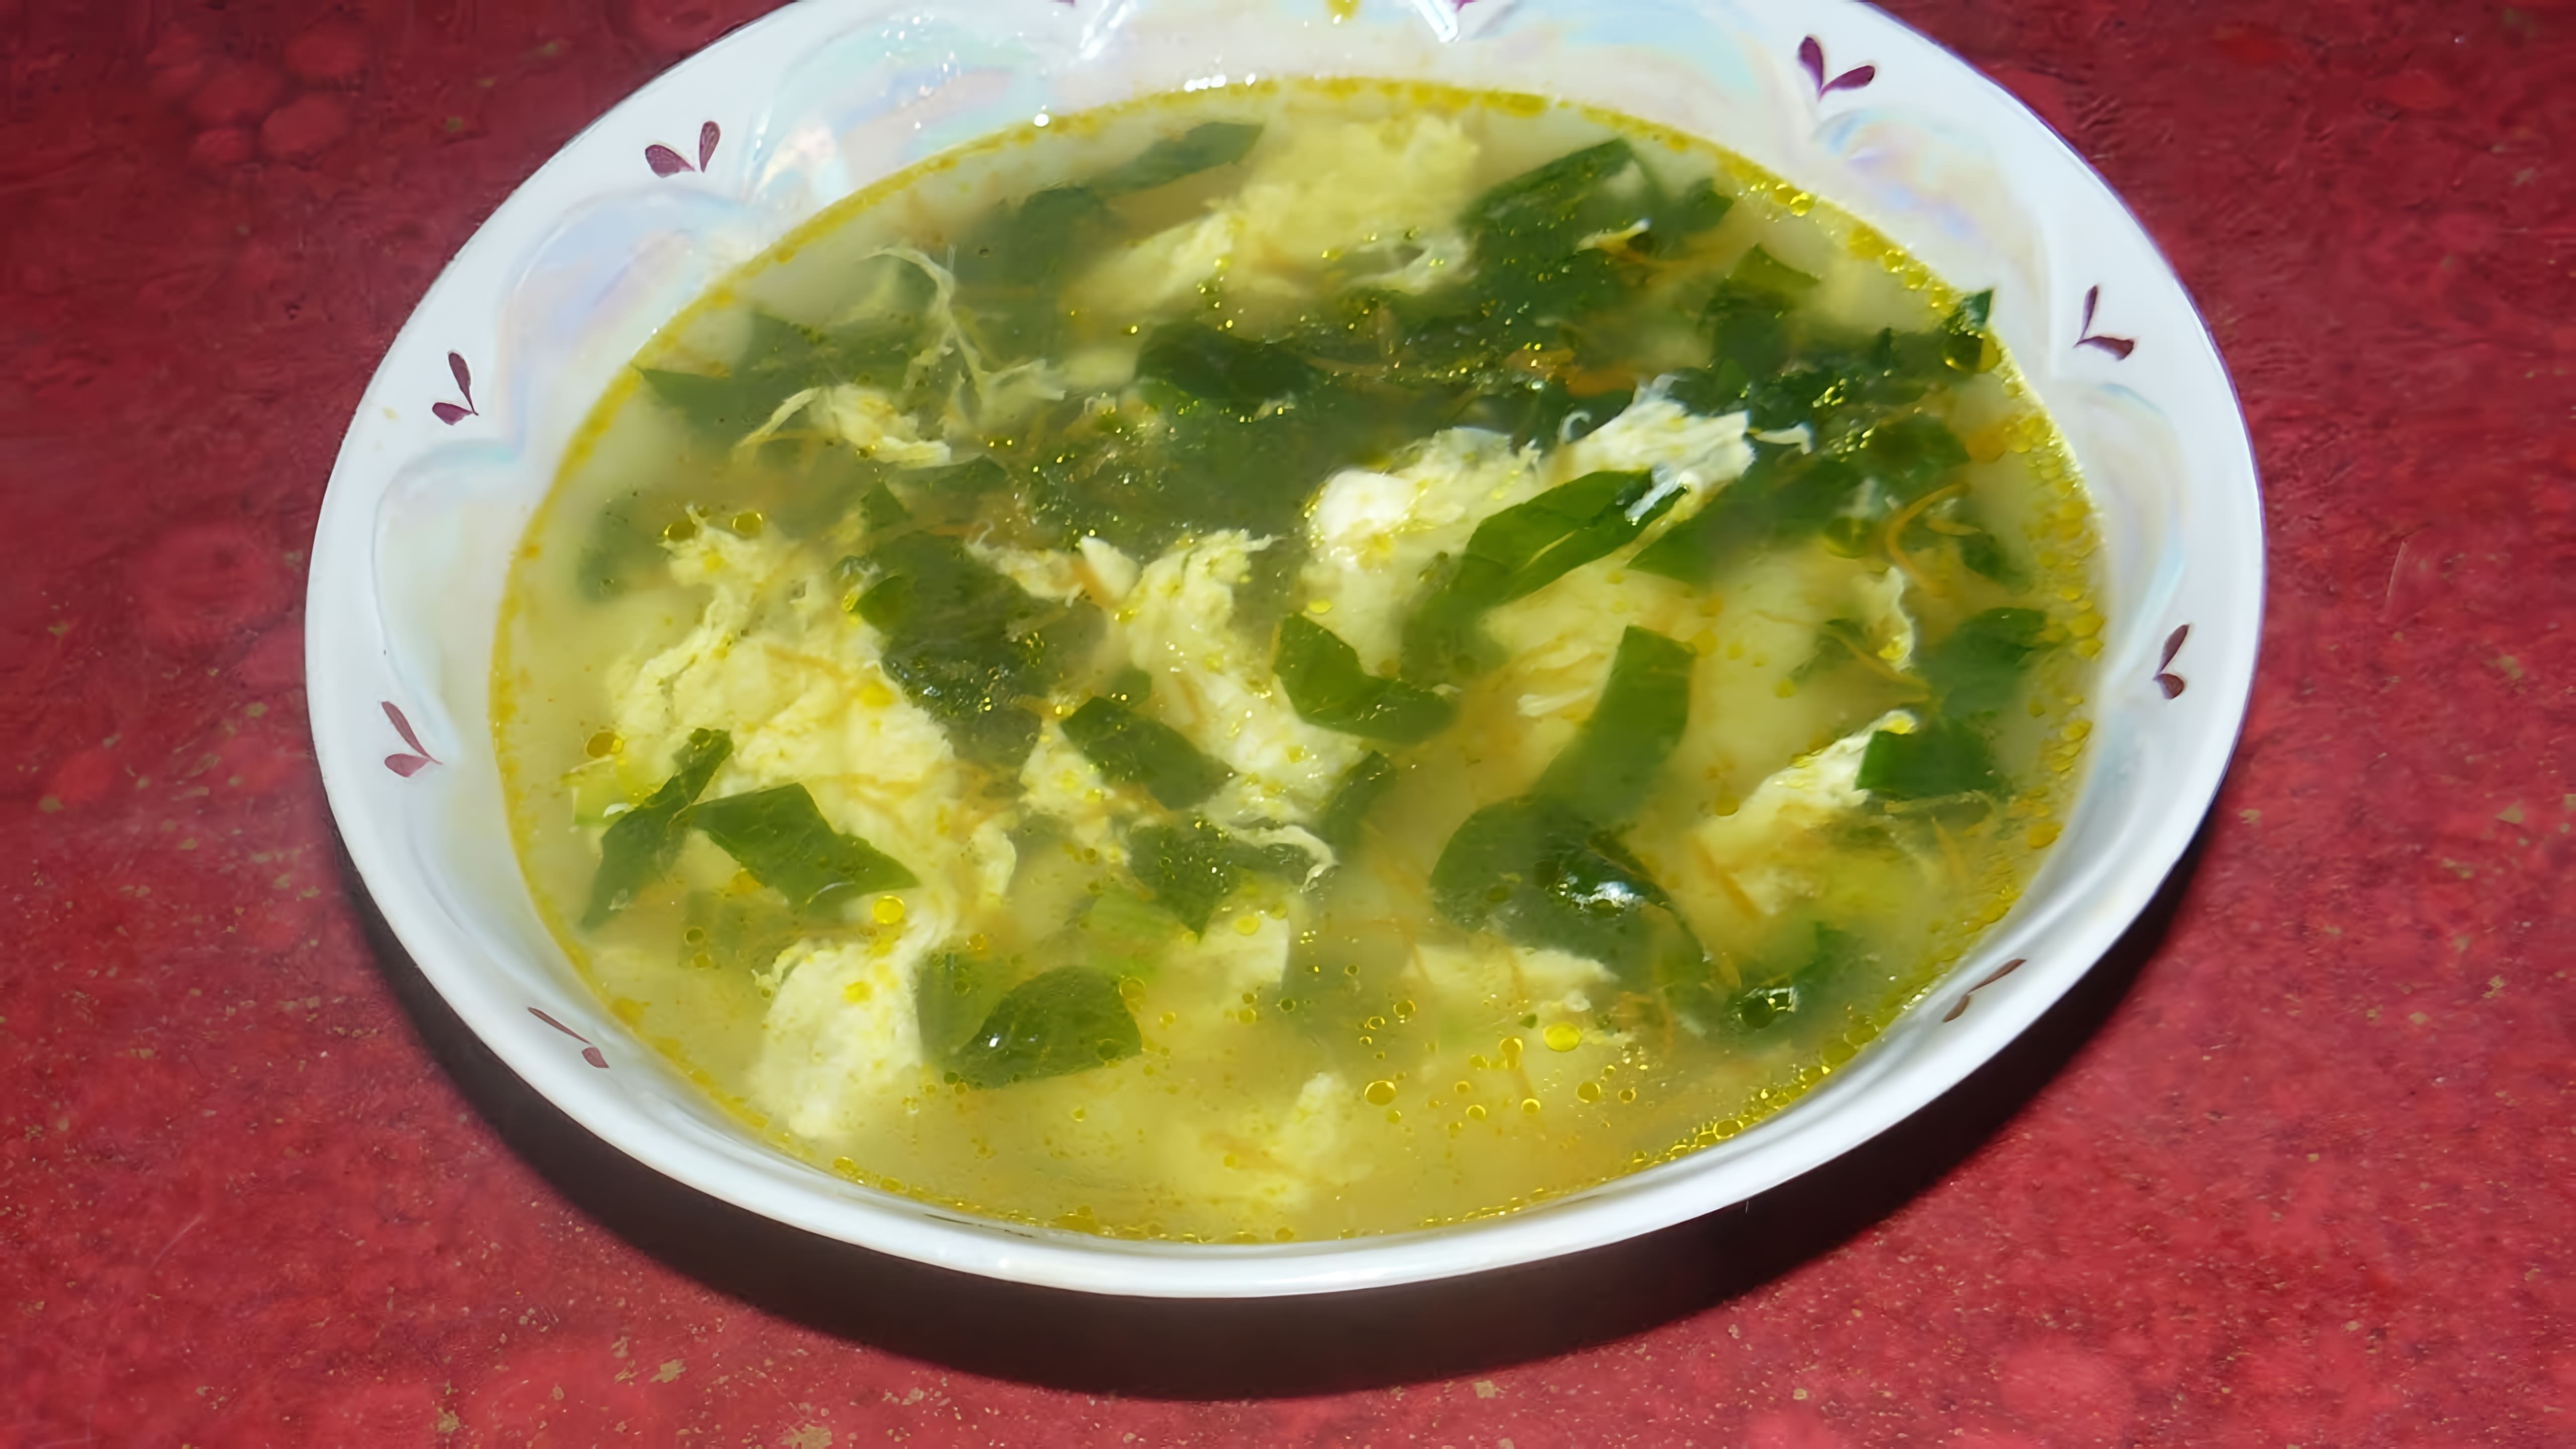 В этом видео демонстрируется рецепт приготовления зеленого супа со шпинатом и яйцом